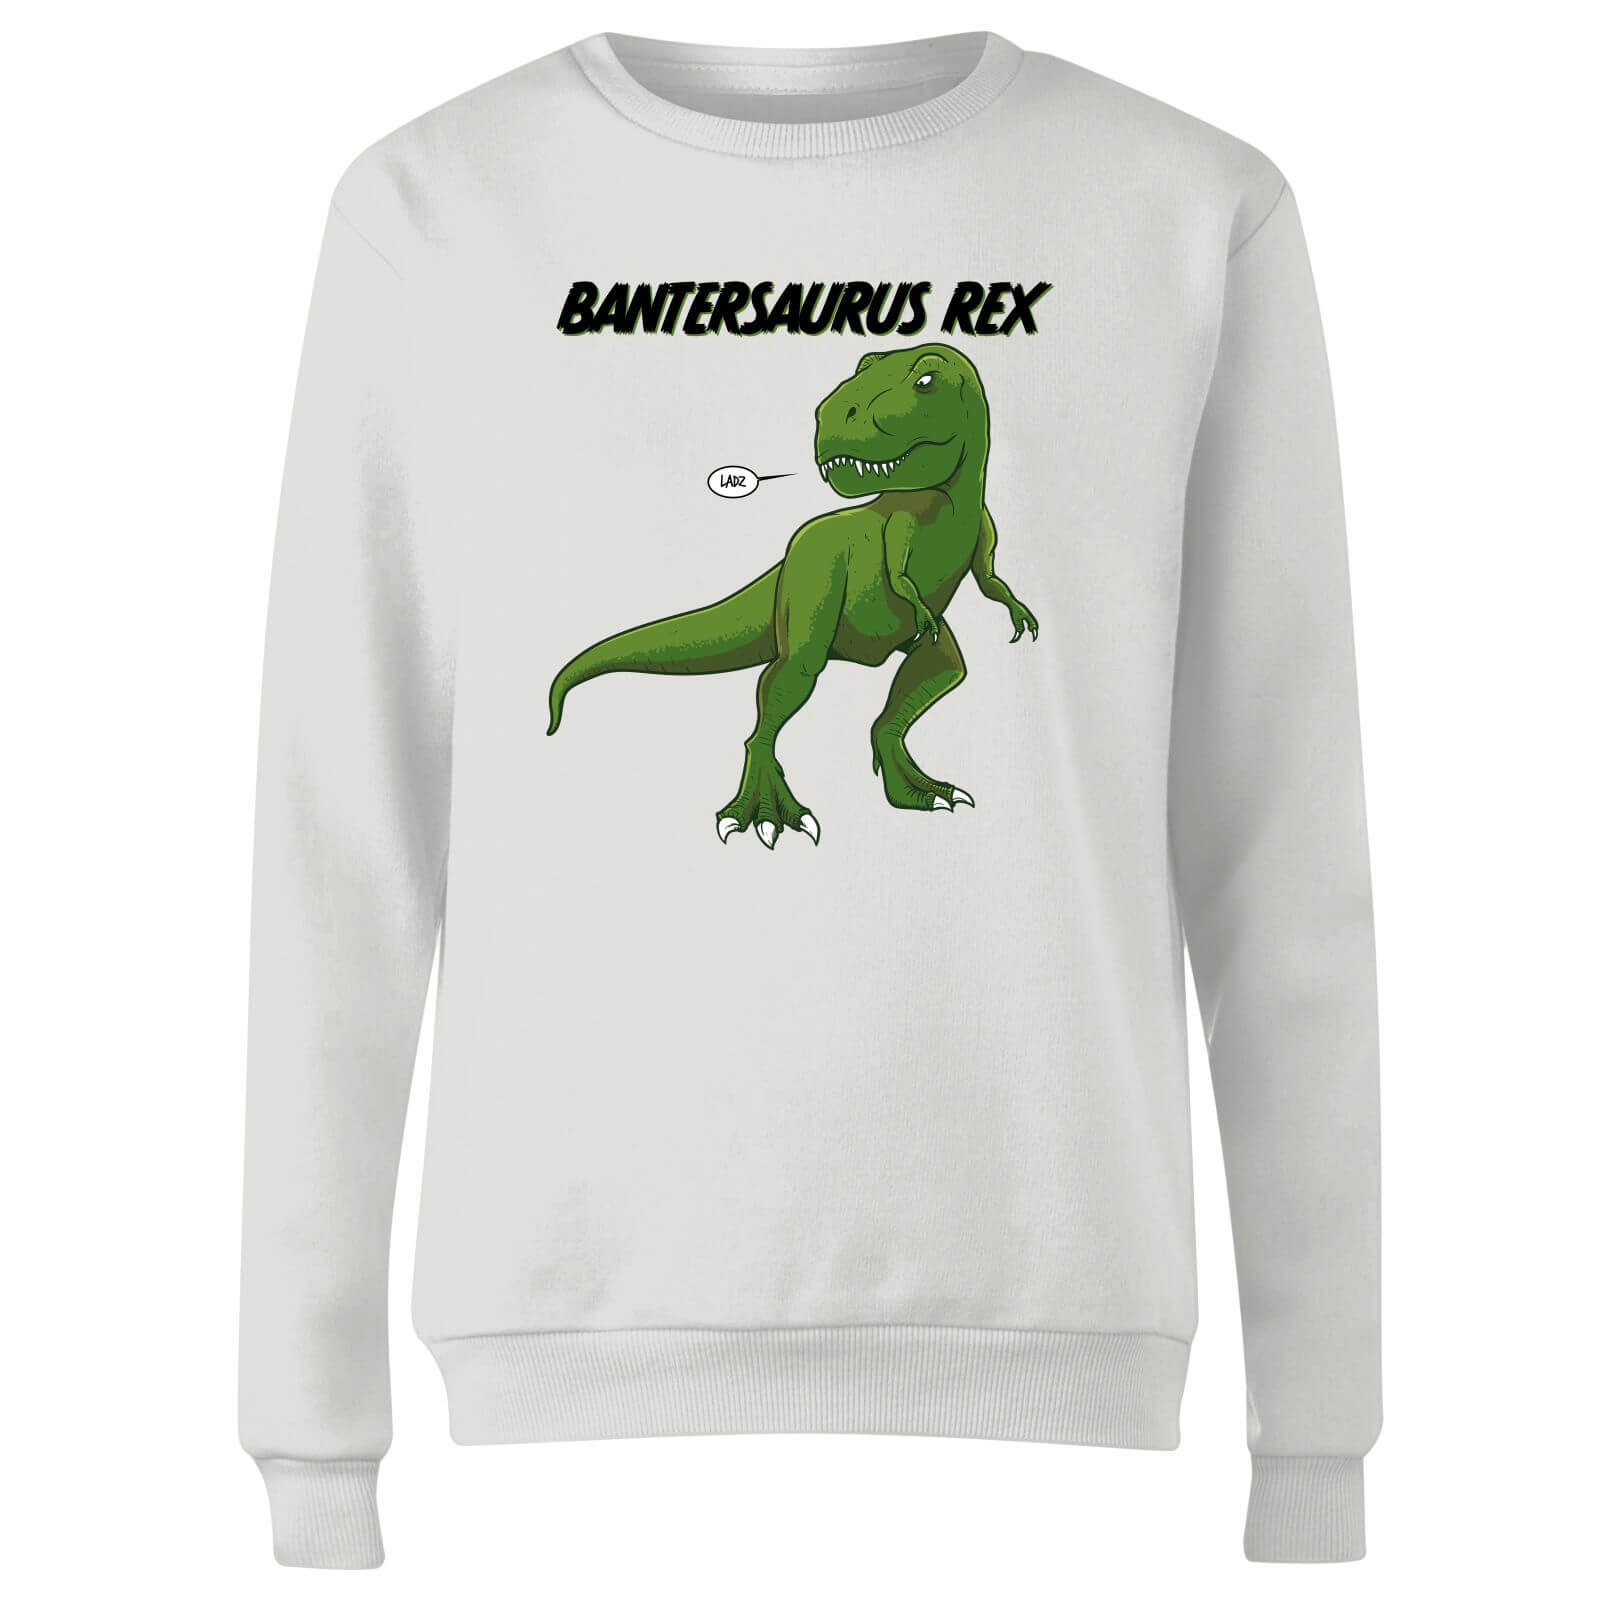 Bantersaurus Rex Women's Sweatshirt - White - XS - White